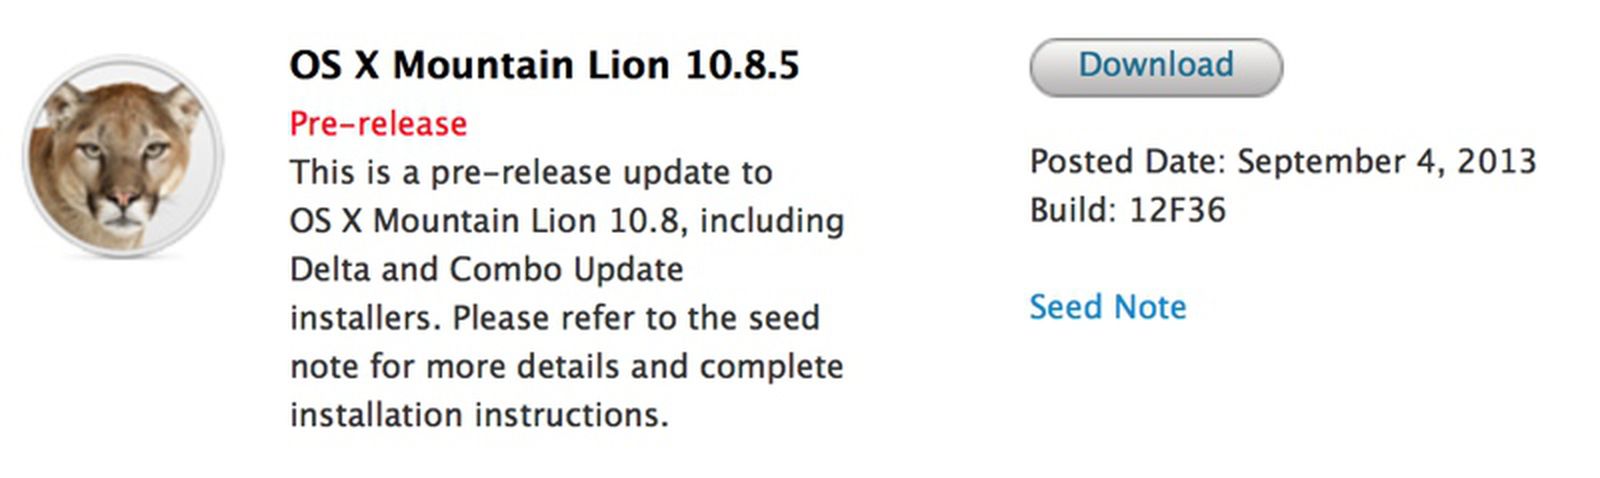 download safari for mac 10.8.5